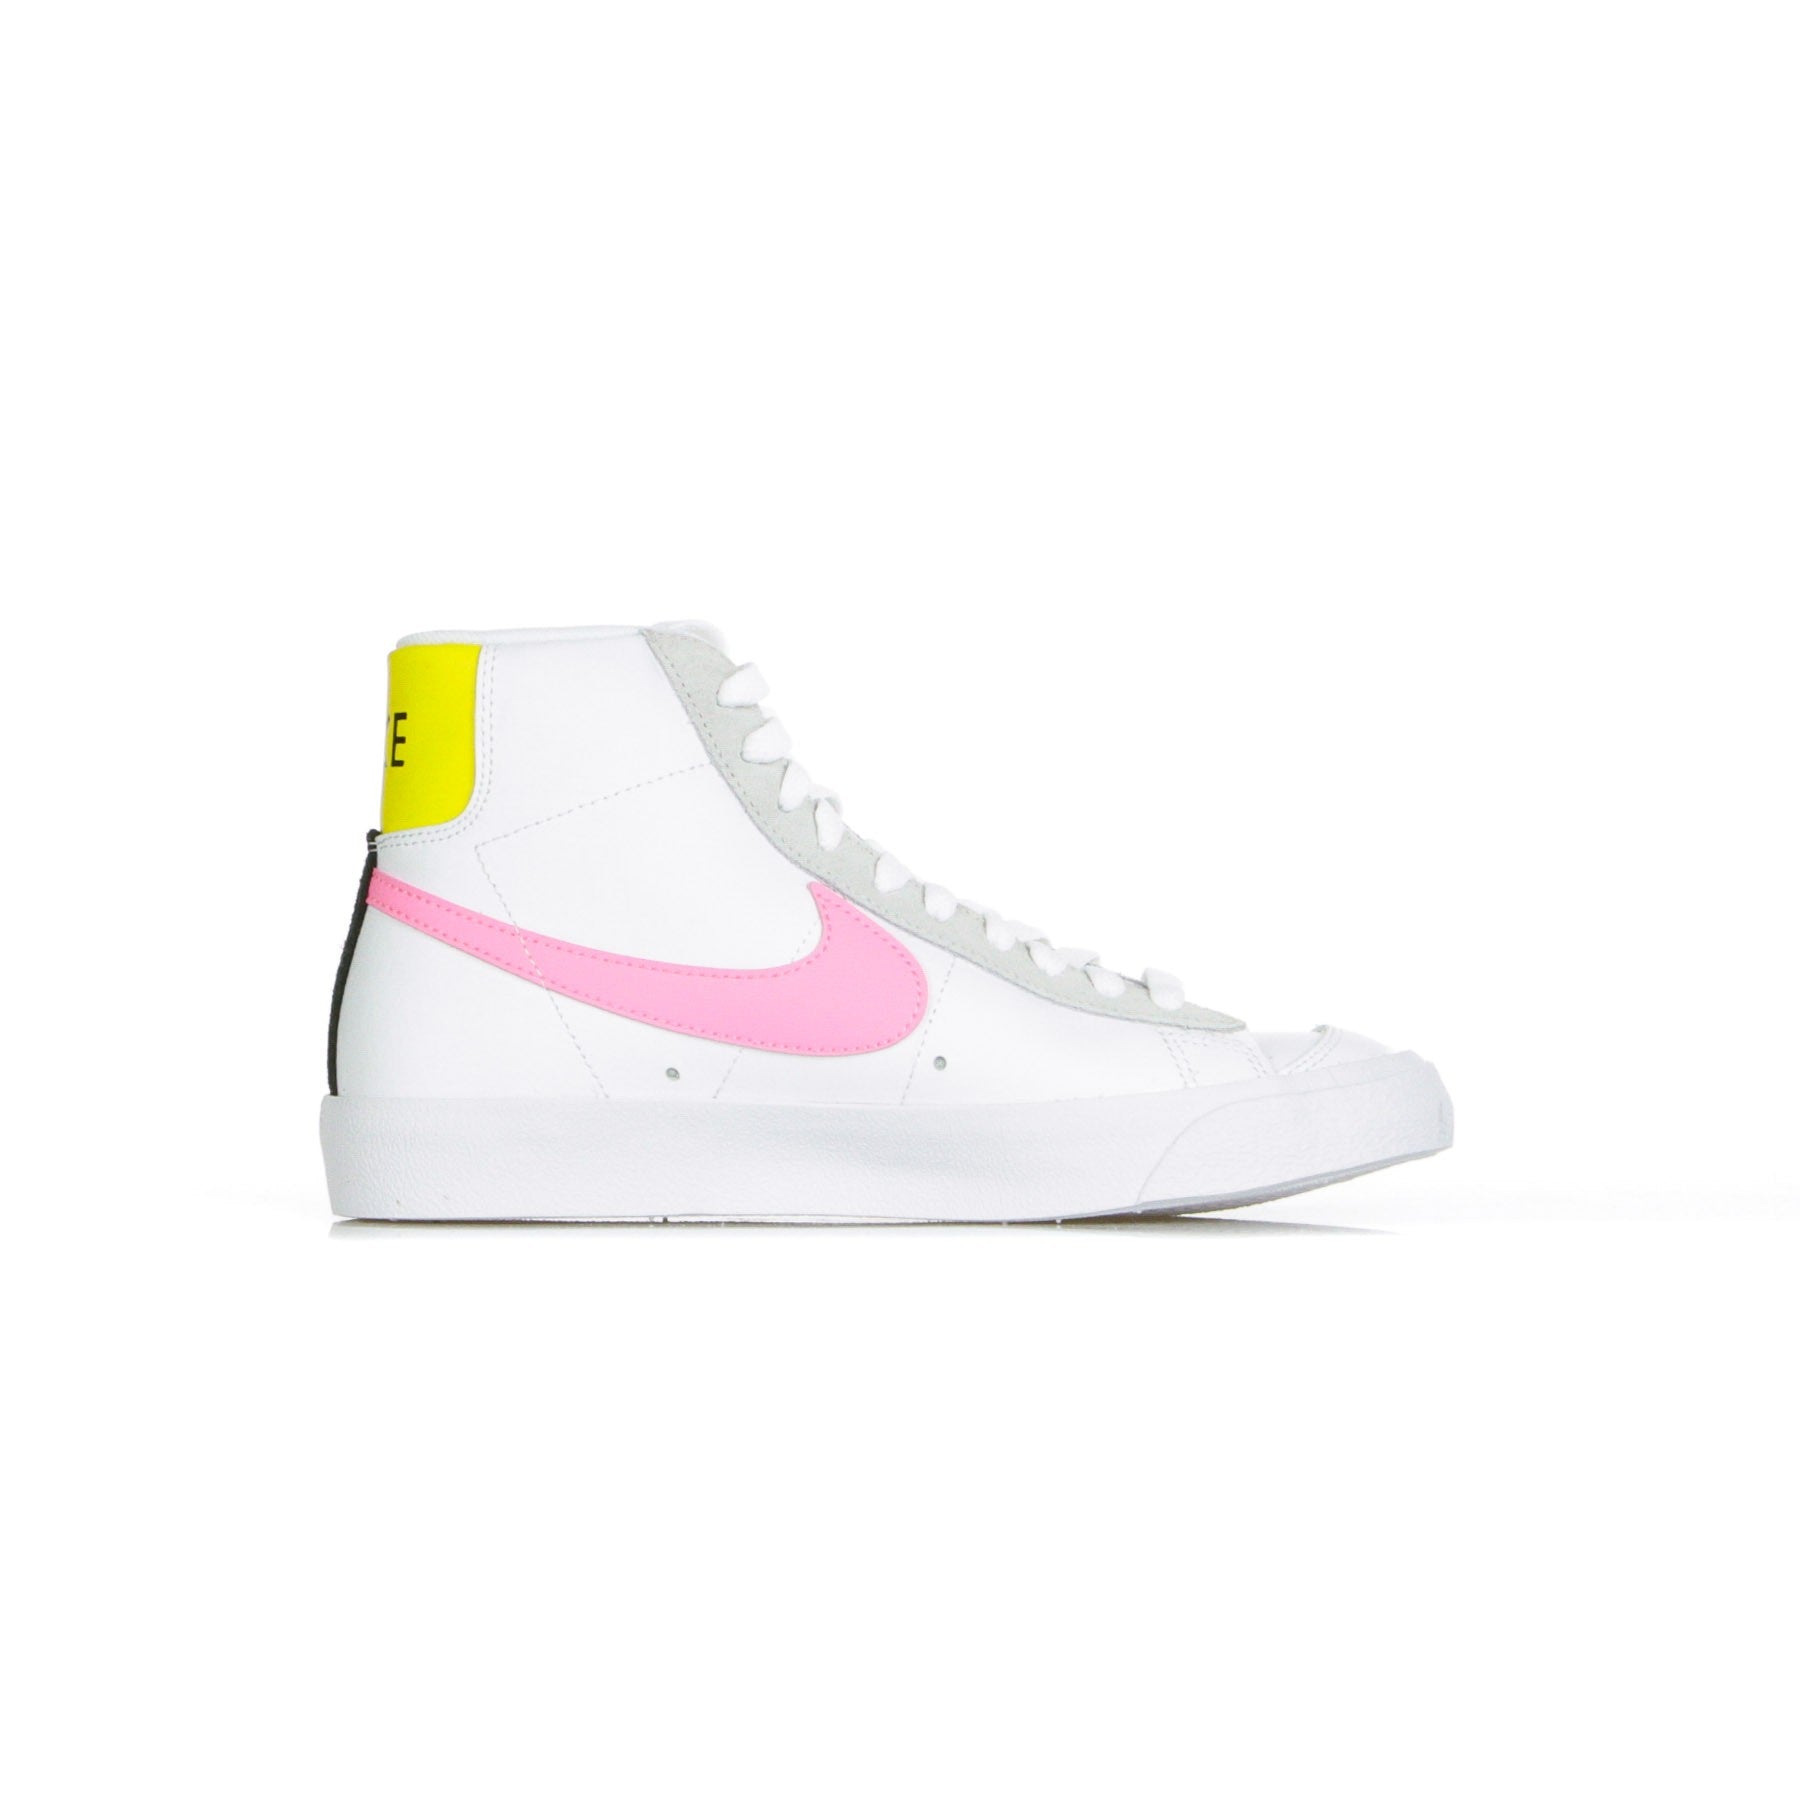 High Women's Shoe Blazer Mid Vintage 77 White/pink Glow/pure Platinum